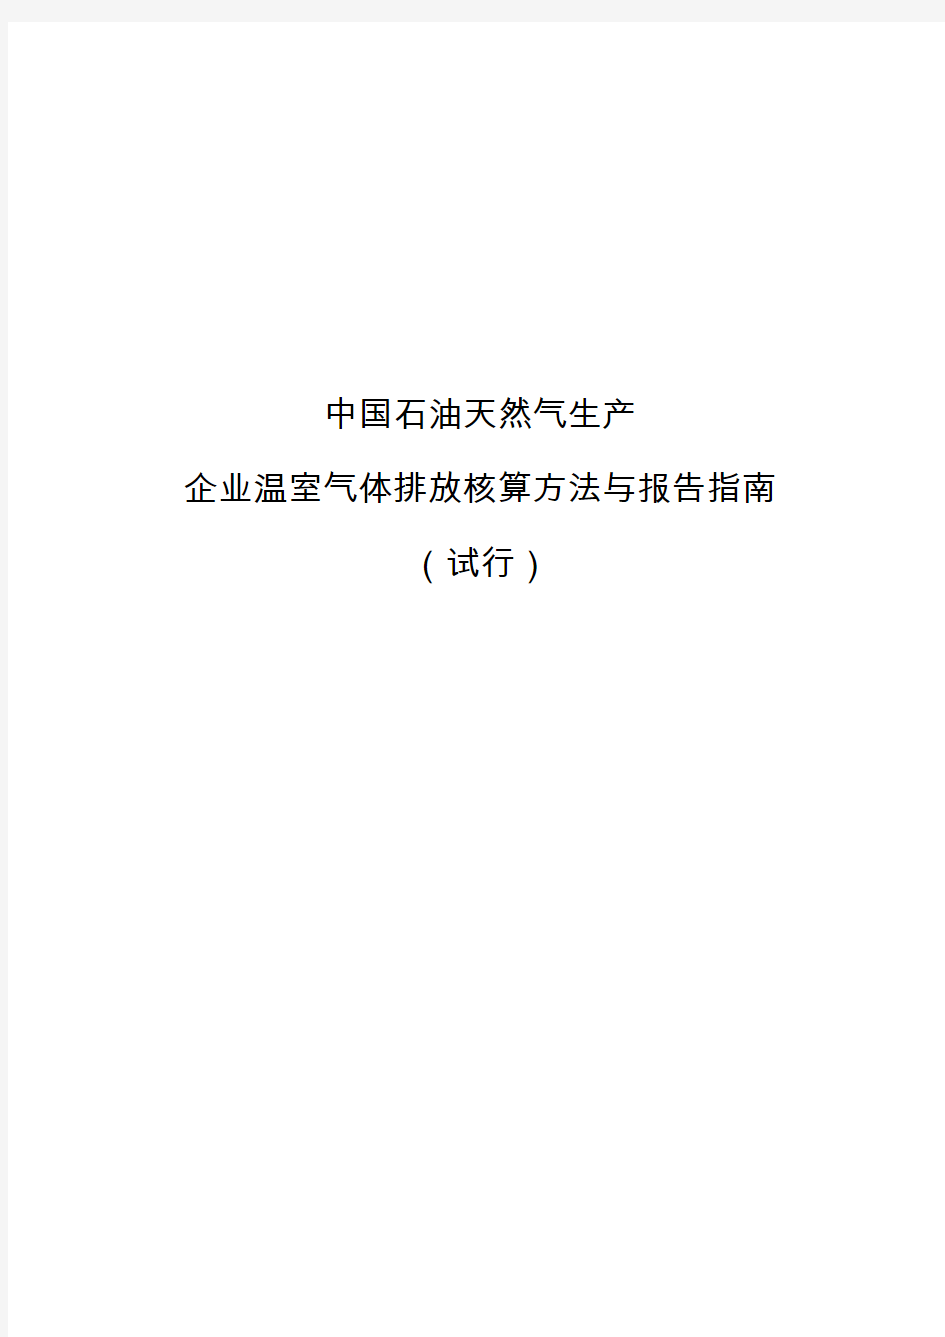 《中国石油和天然气生产企业温室气体排放核算方法与报告指南(试行)》